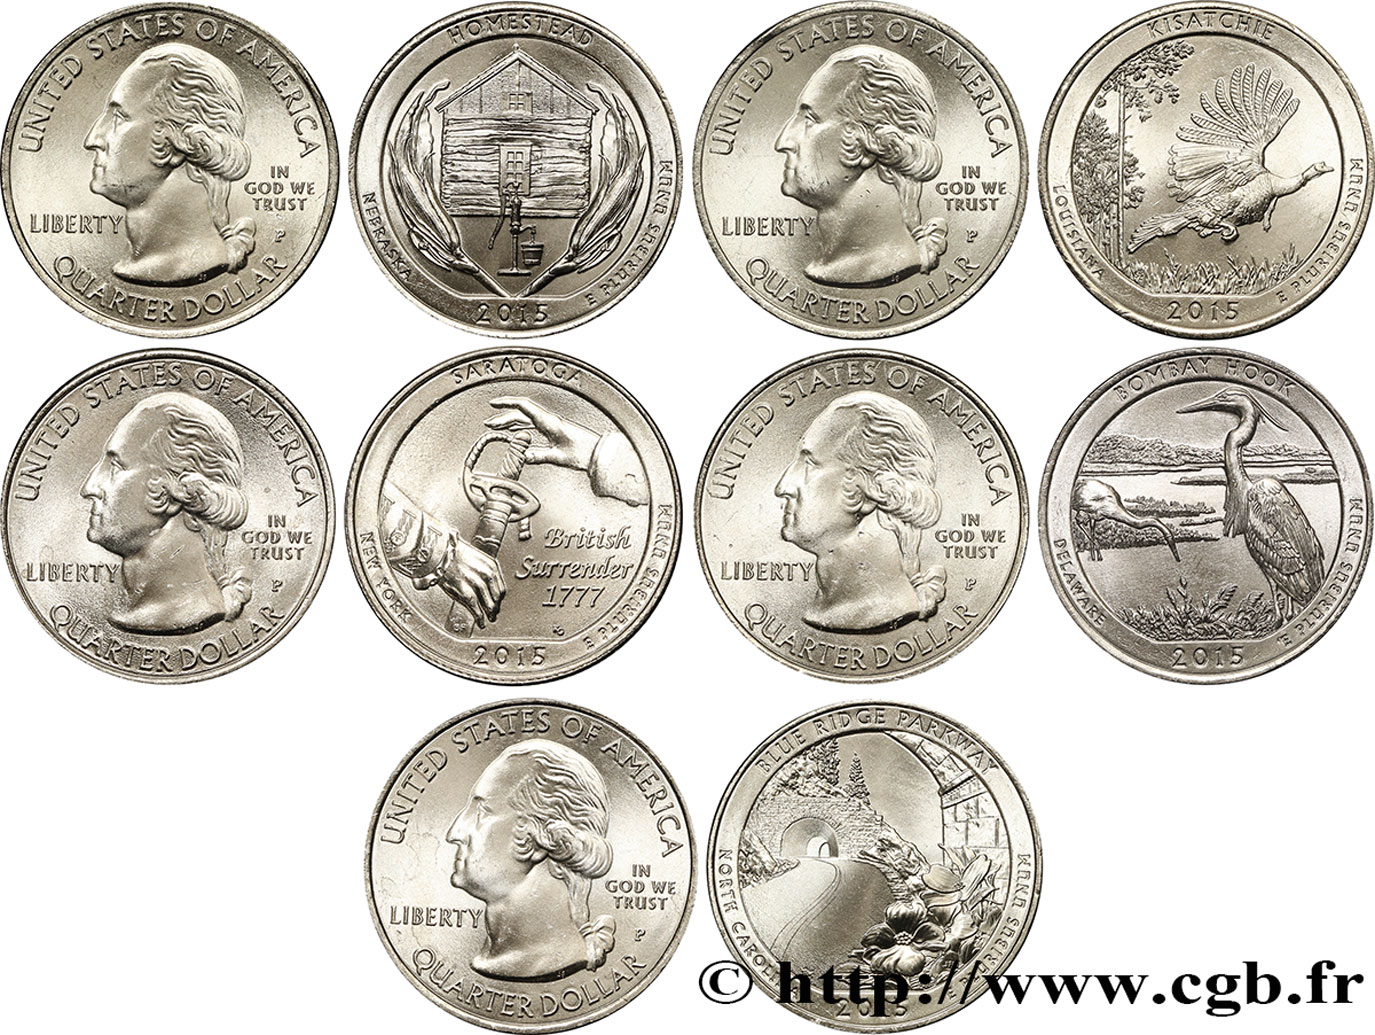 UNITED STATES OF AMERICA Série complète des 5 monnaies de 1/4 de Dollar 2015 2015 Philadelphie - P MS 